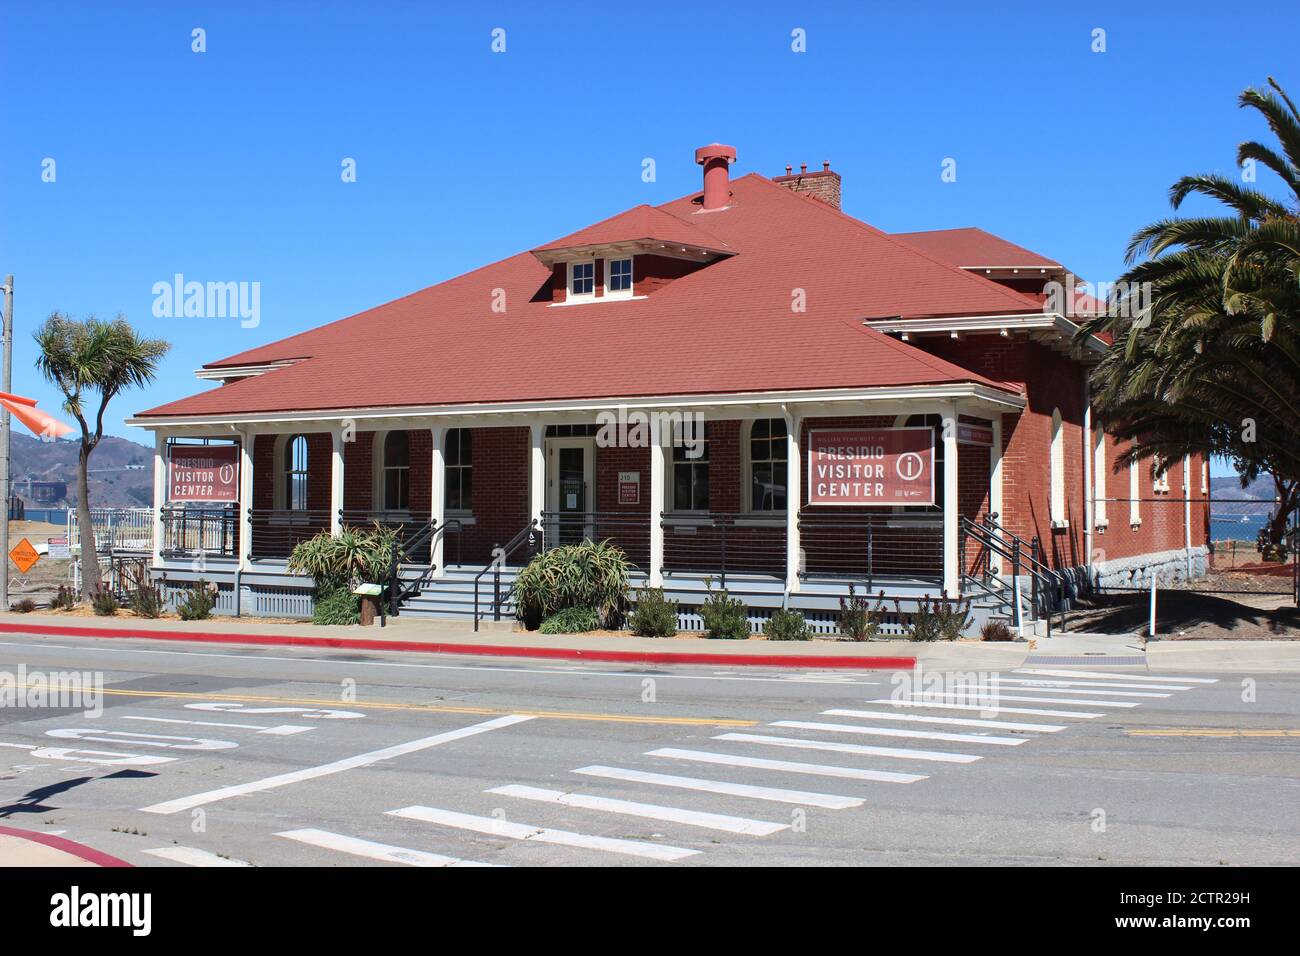 Centre des visiteurs, ancienne maison de guardhouse, main Post, Presidio, San Francisco, Californie Banque D'Images